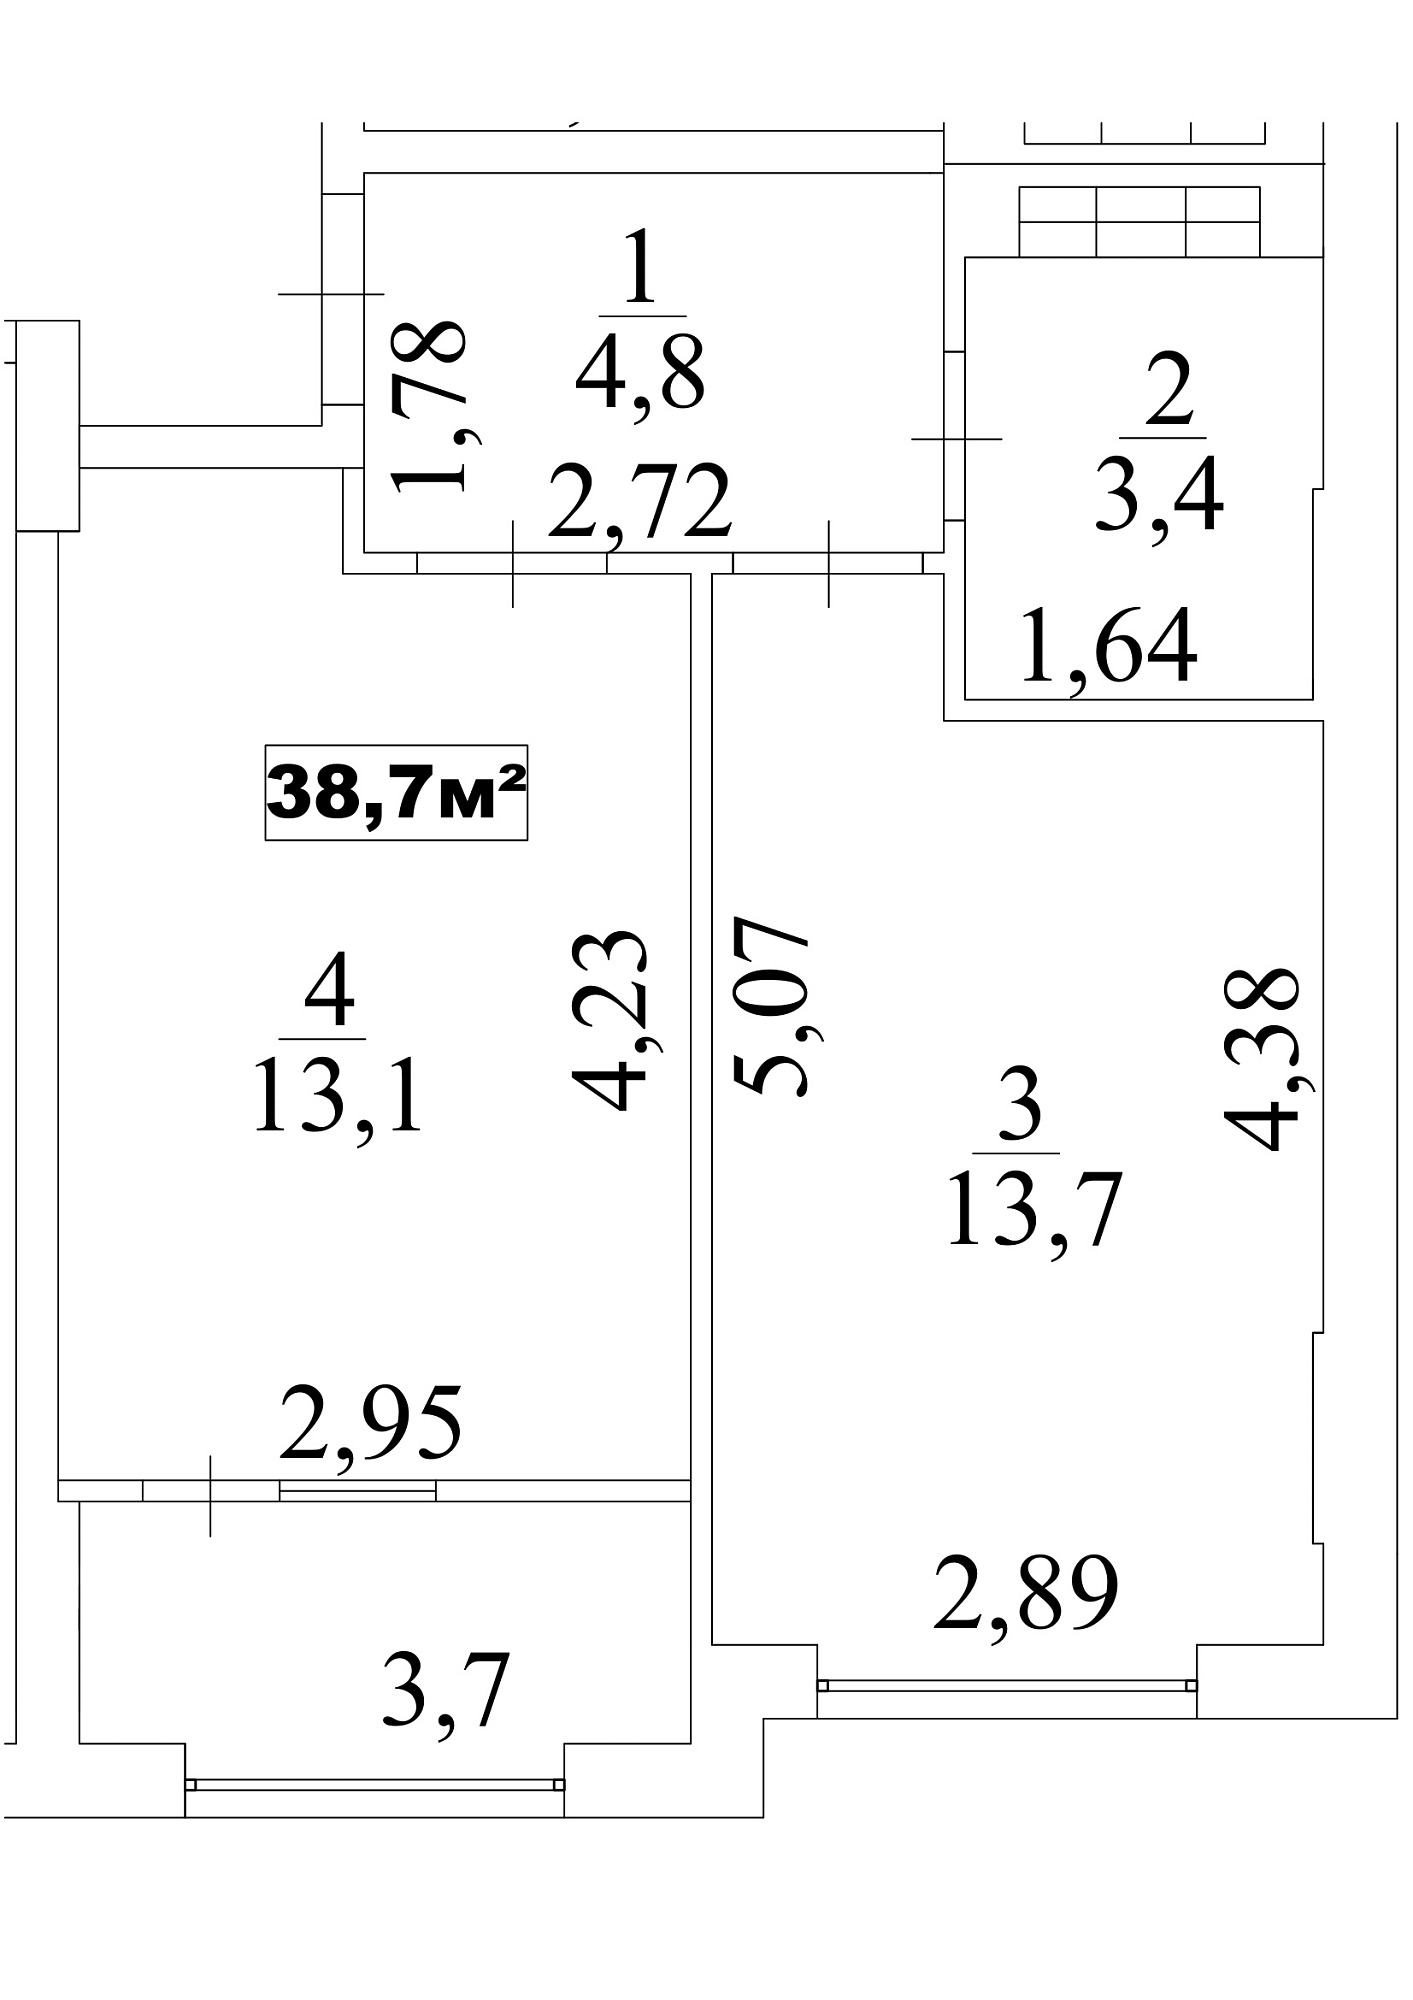 Планировка 1-к квартира площей 38.7м2, AB-10-02/0016в.